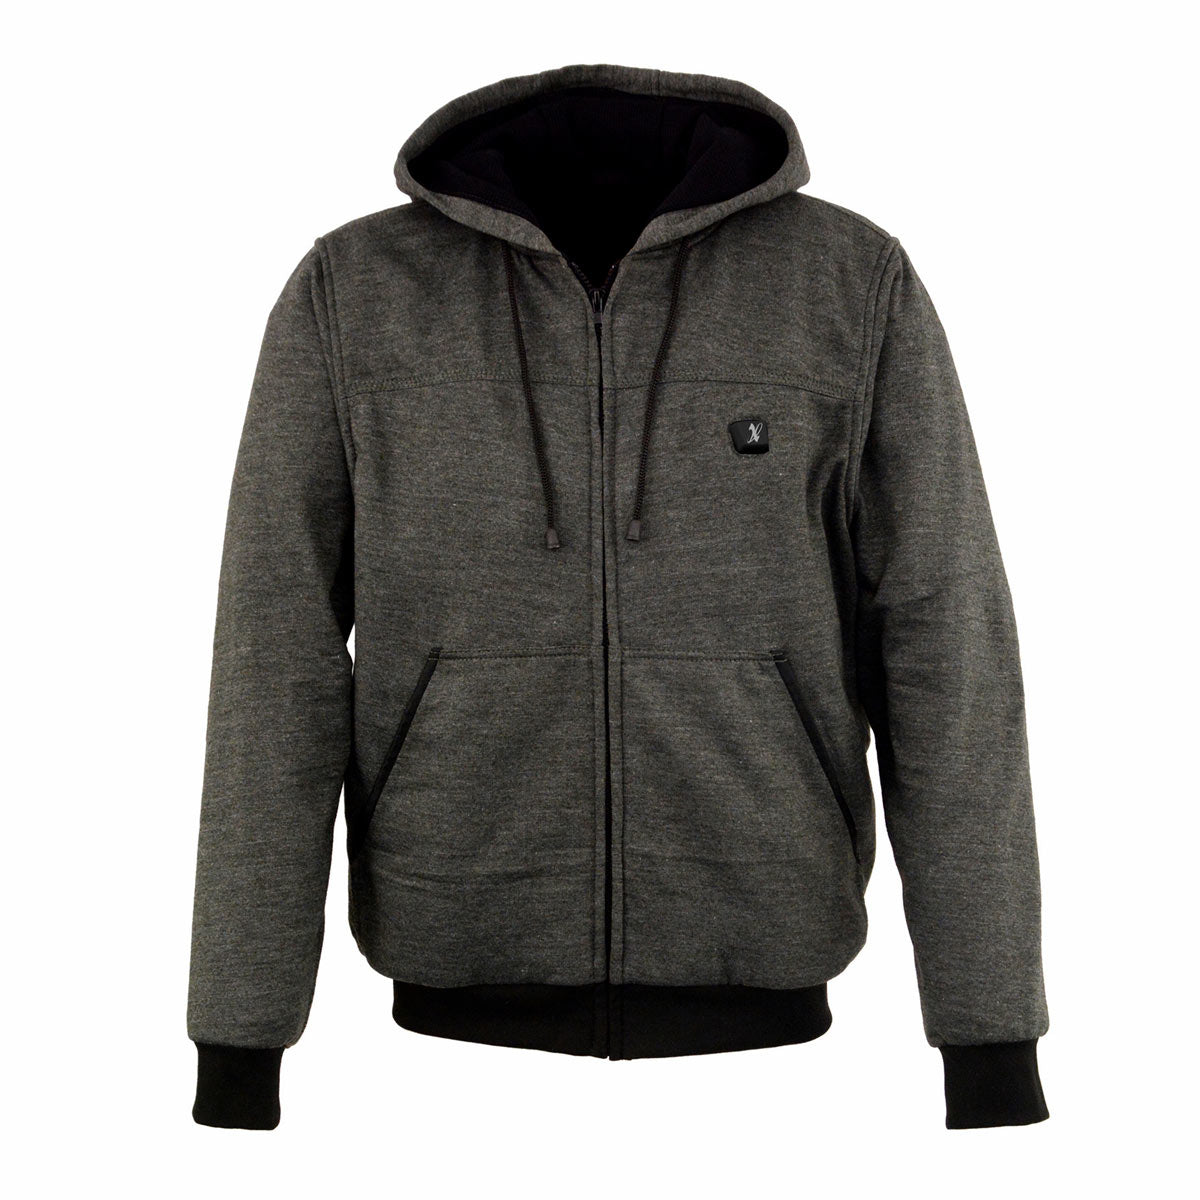 Nexgen Heat NXM1717DUAL Technology Men's “Fiery’’ Heated Hoodie - Grey Sweatshirt Jacket for Winter w/ Battery Pack